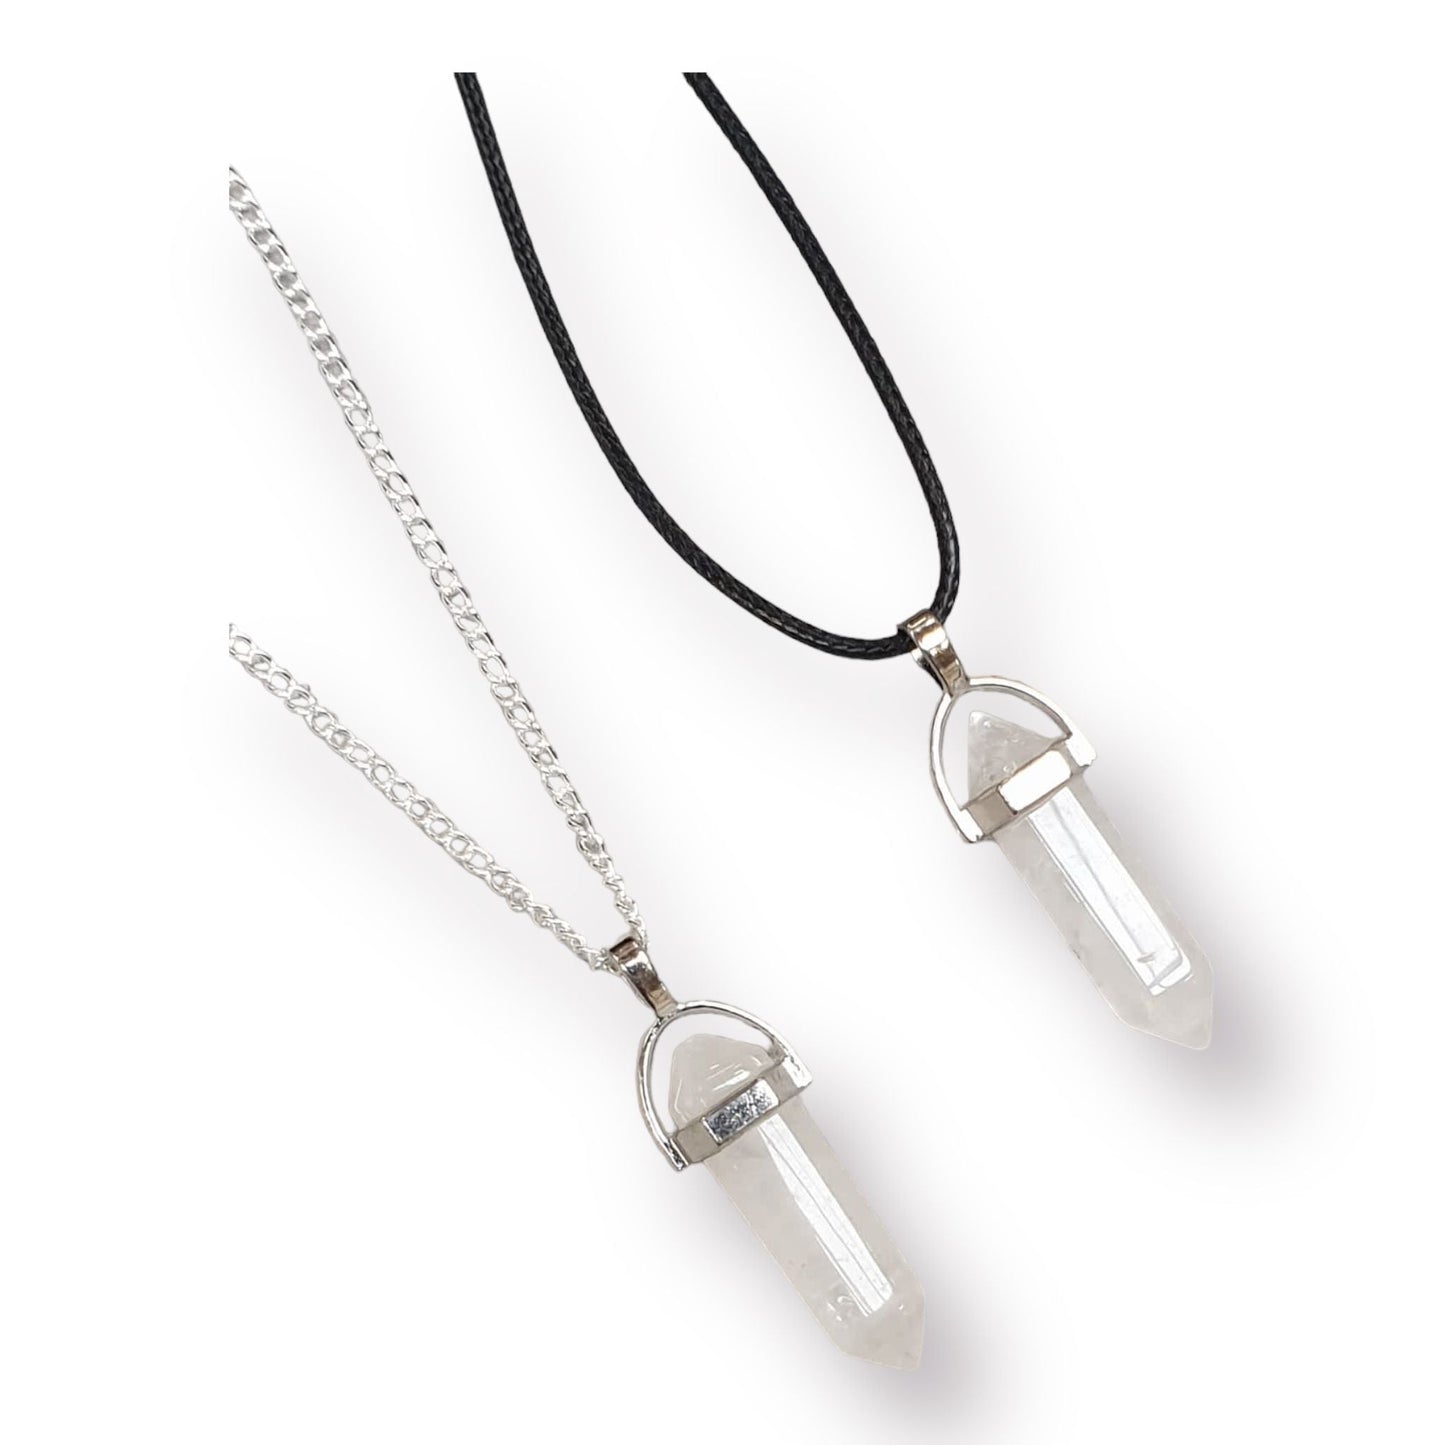 Clear Quartz Pendant Gemstone Necklace Chain Options - Premium  from Uniquely Holt - Just £5.99! Shop now at Uniquely Holt